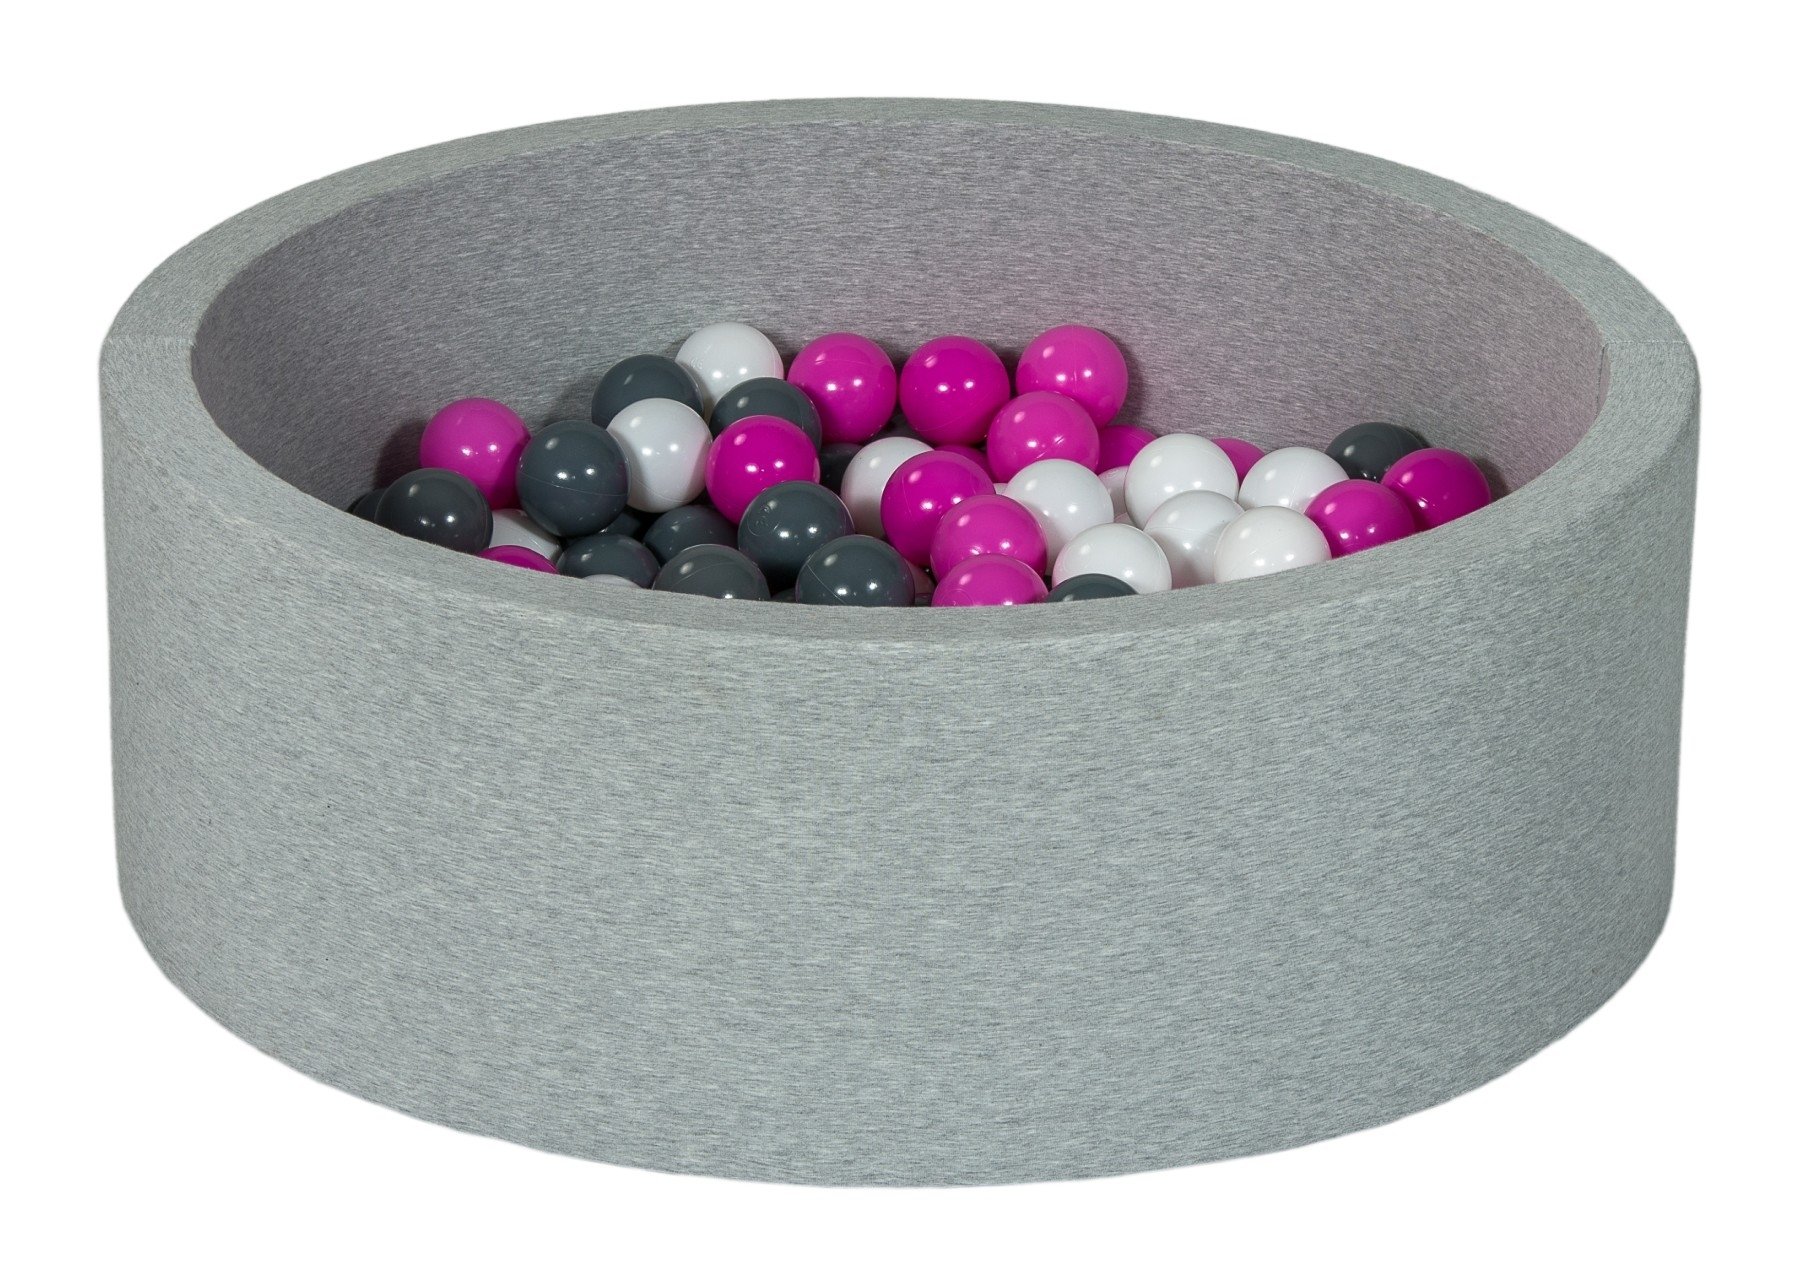 Piscine à balles pour bébé avec 200 balles 90x30cm grise balle violet